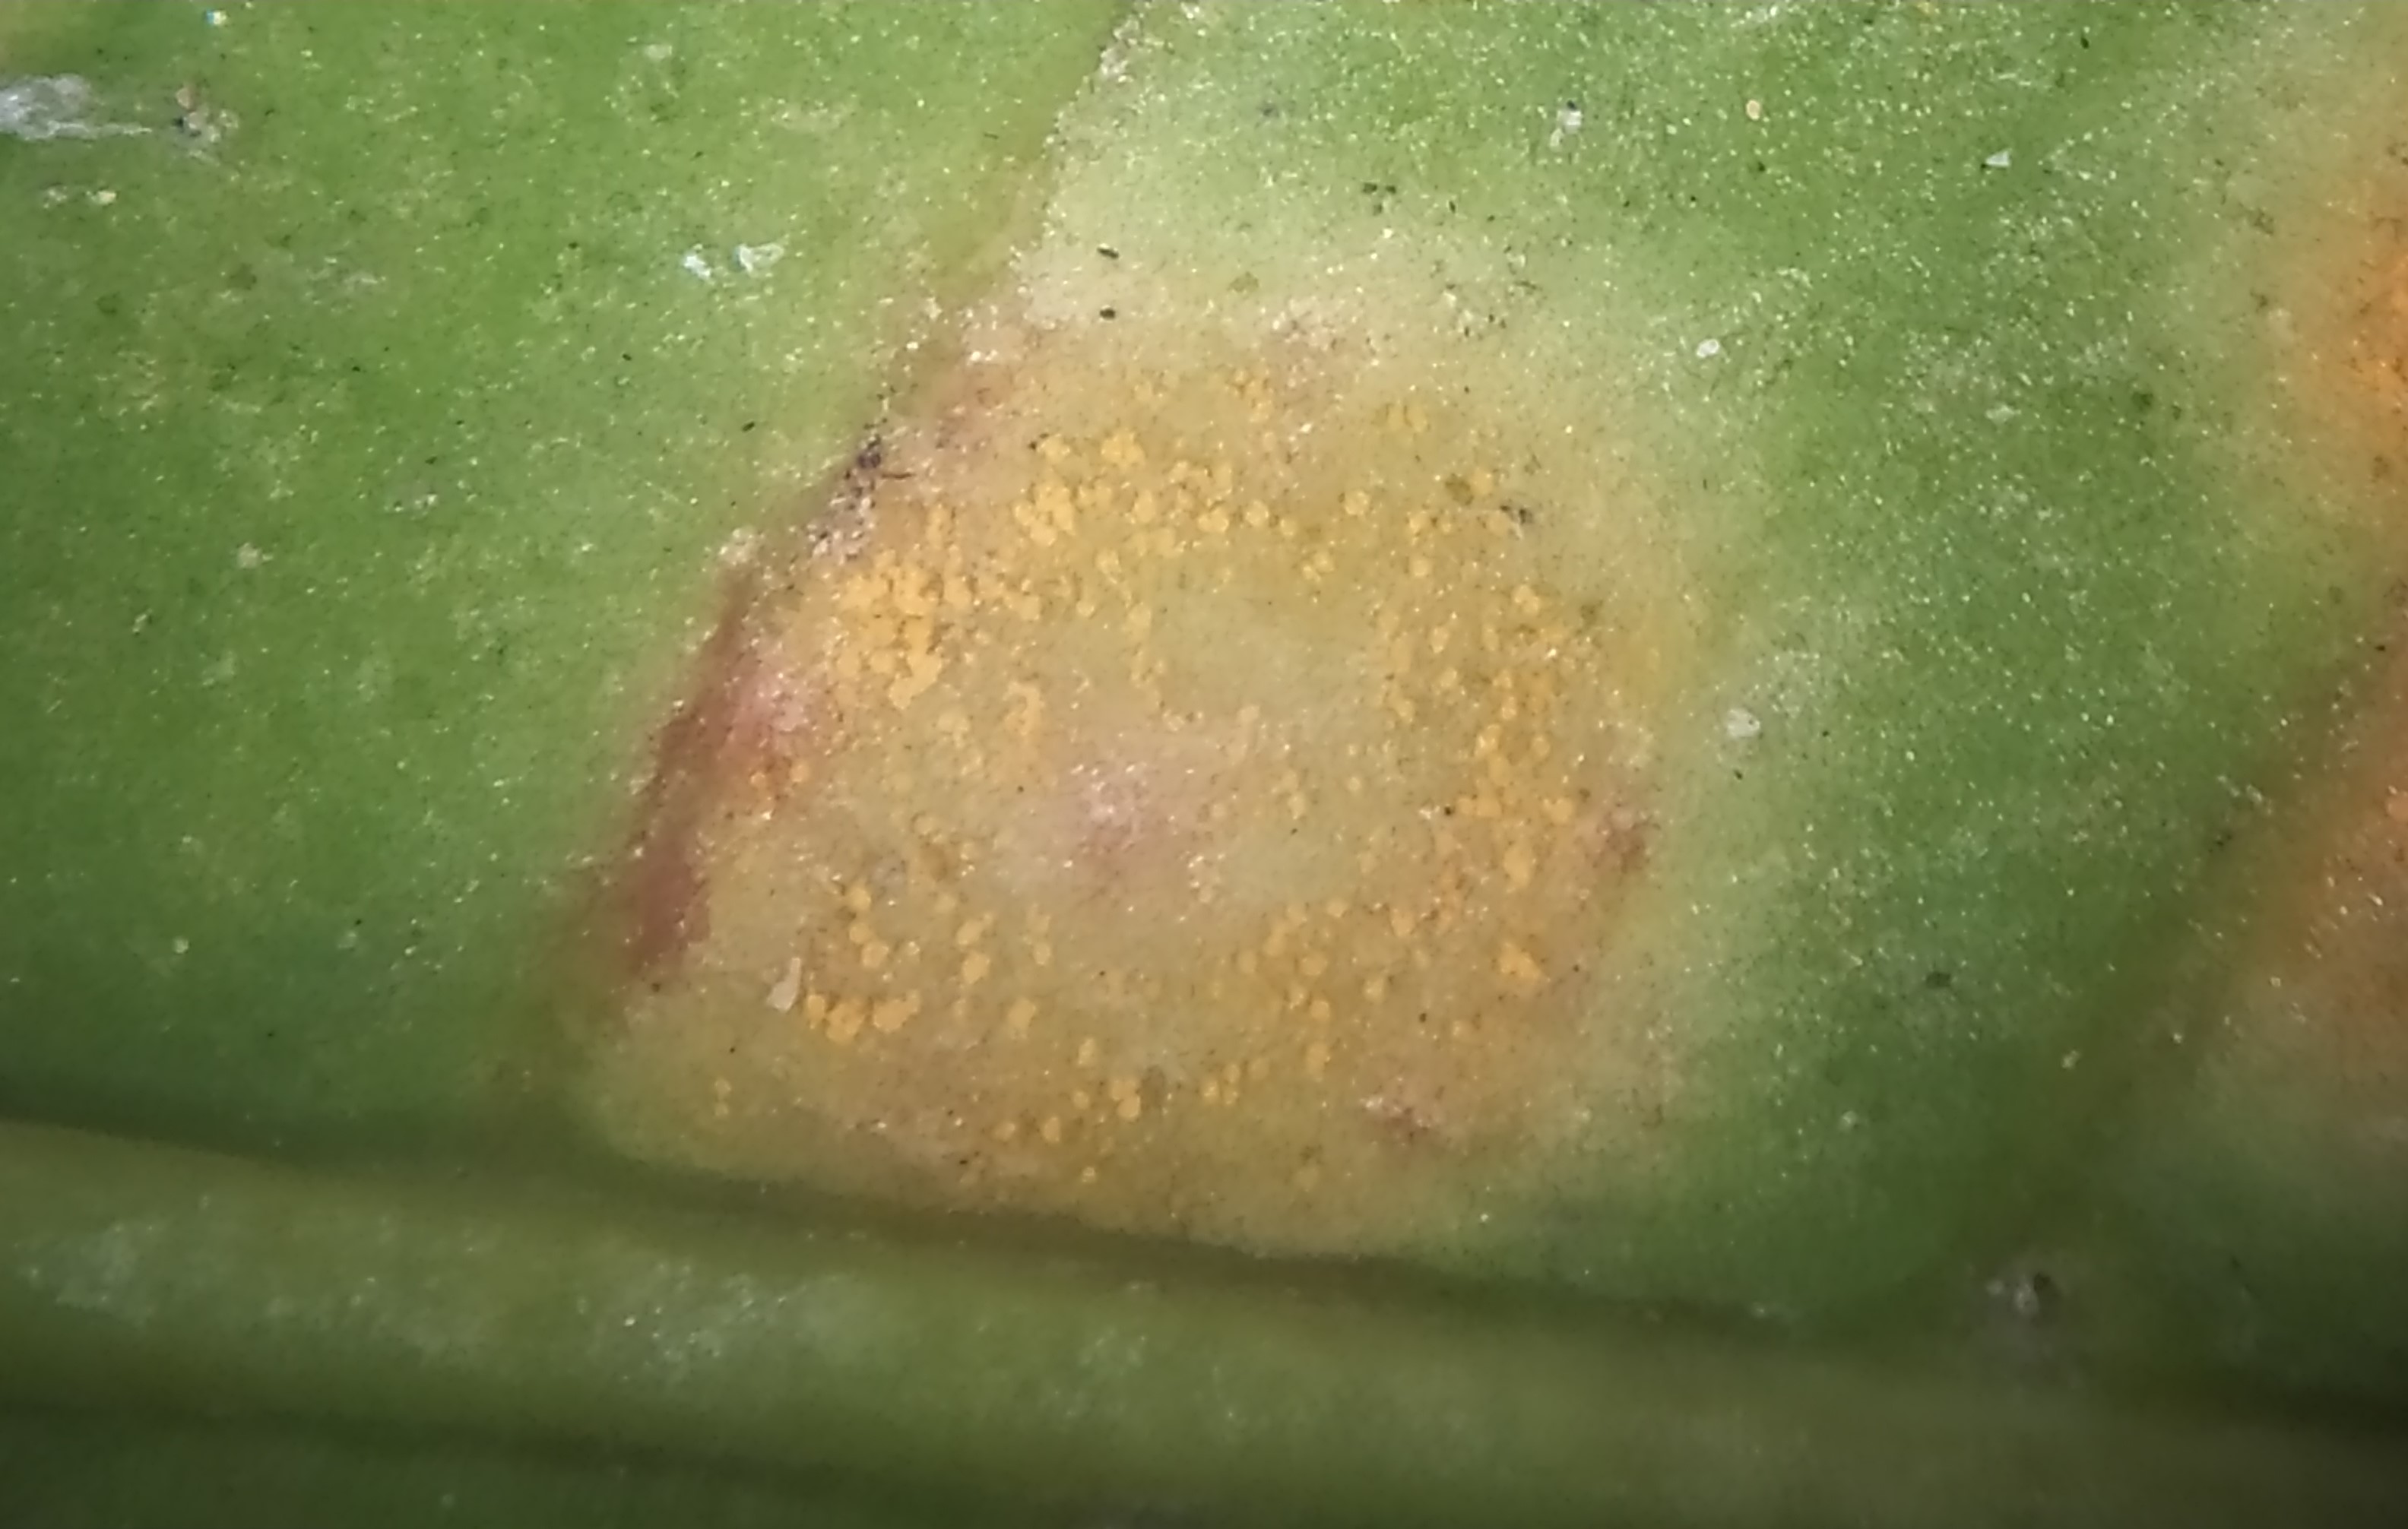 <p><b>Mancha com aspecto pulverulento devido à formação de pústulas de Hemileia vastatrix vista ao microscópio estereoscópico.</b></p><p>Autor: Ricardo José Domingues</p>